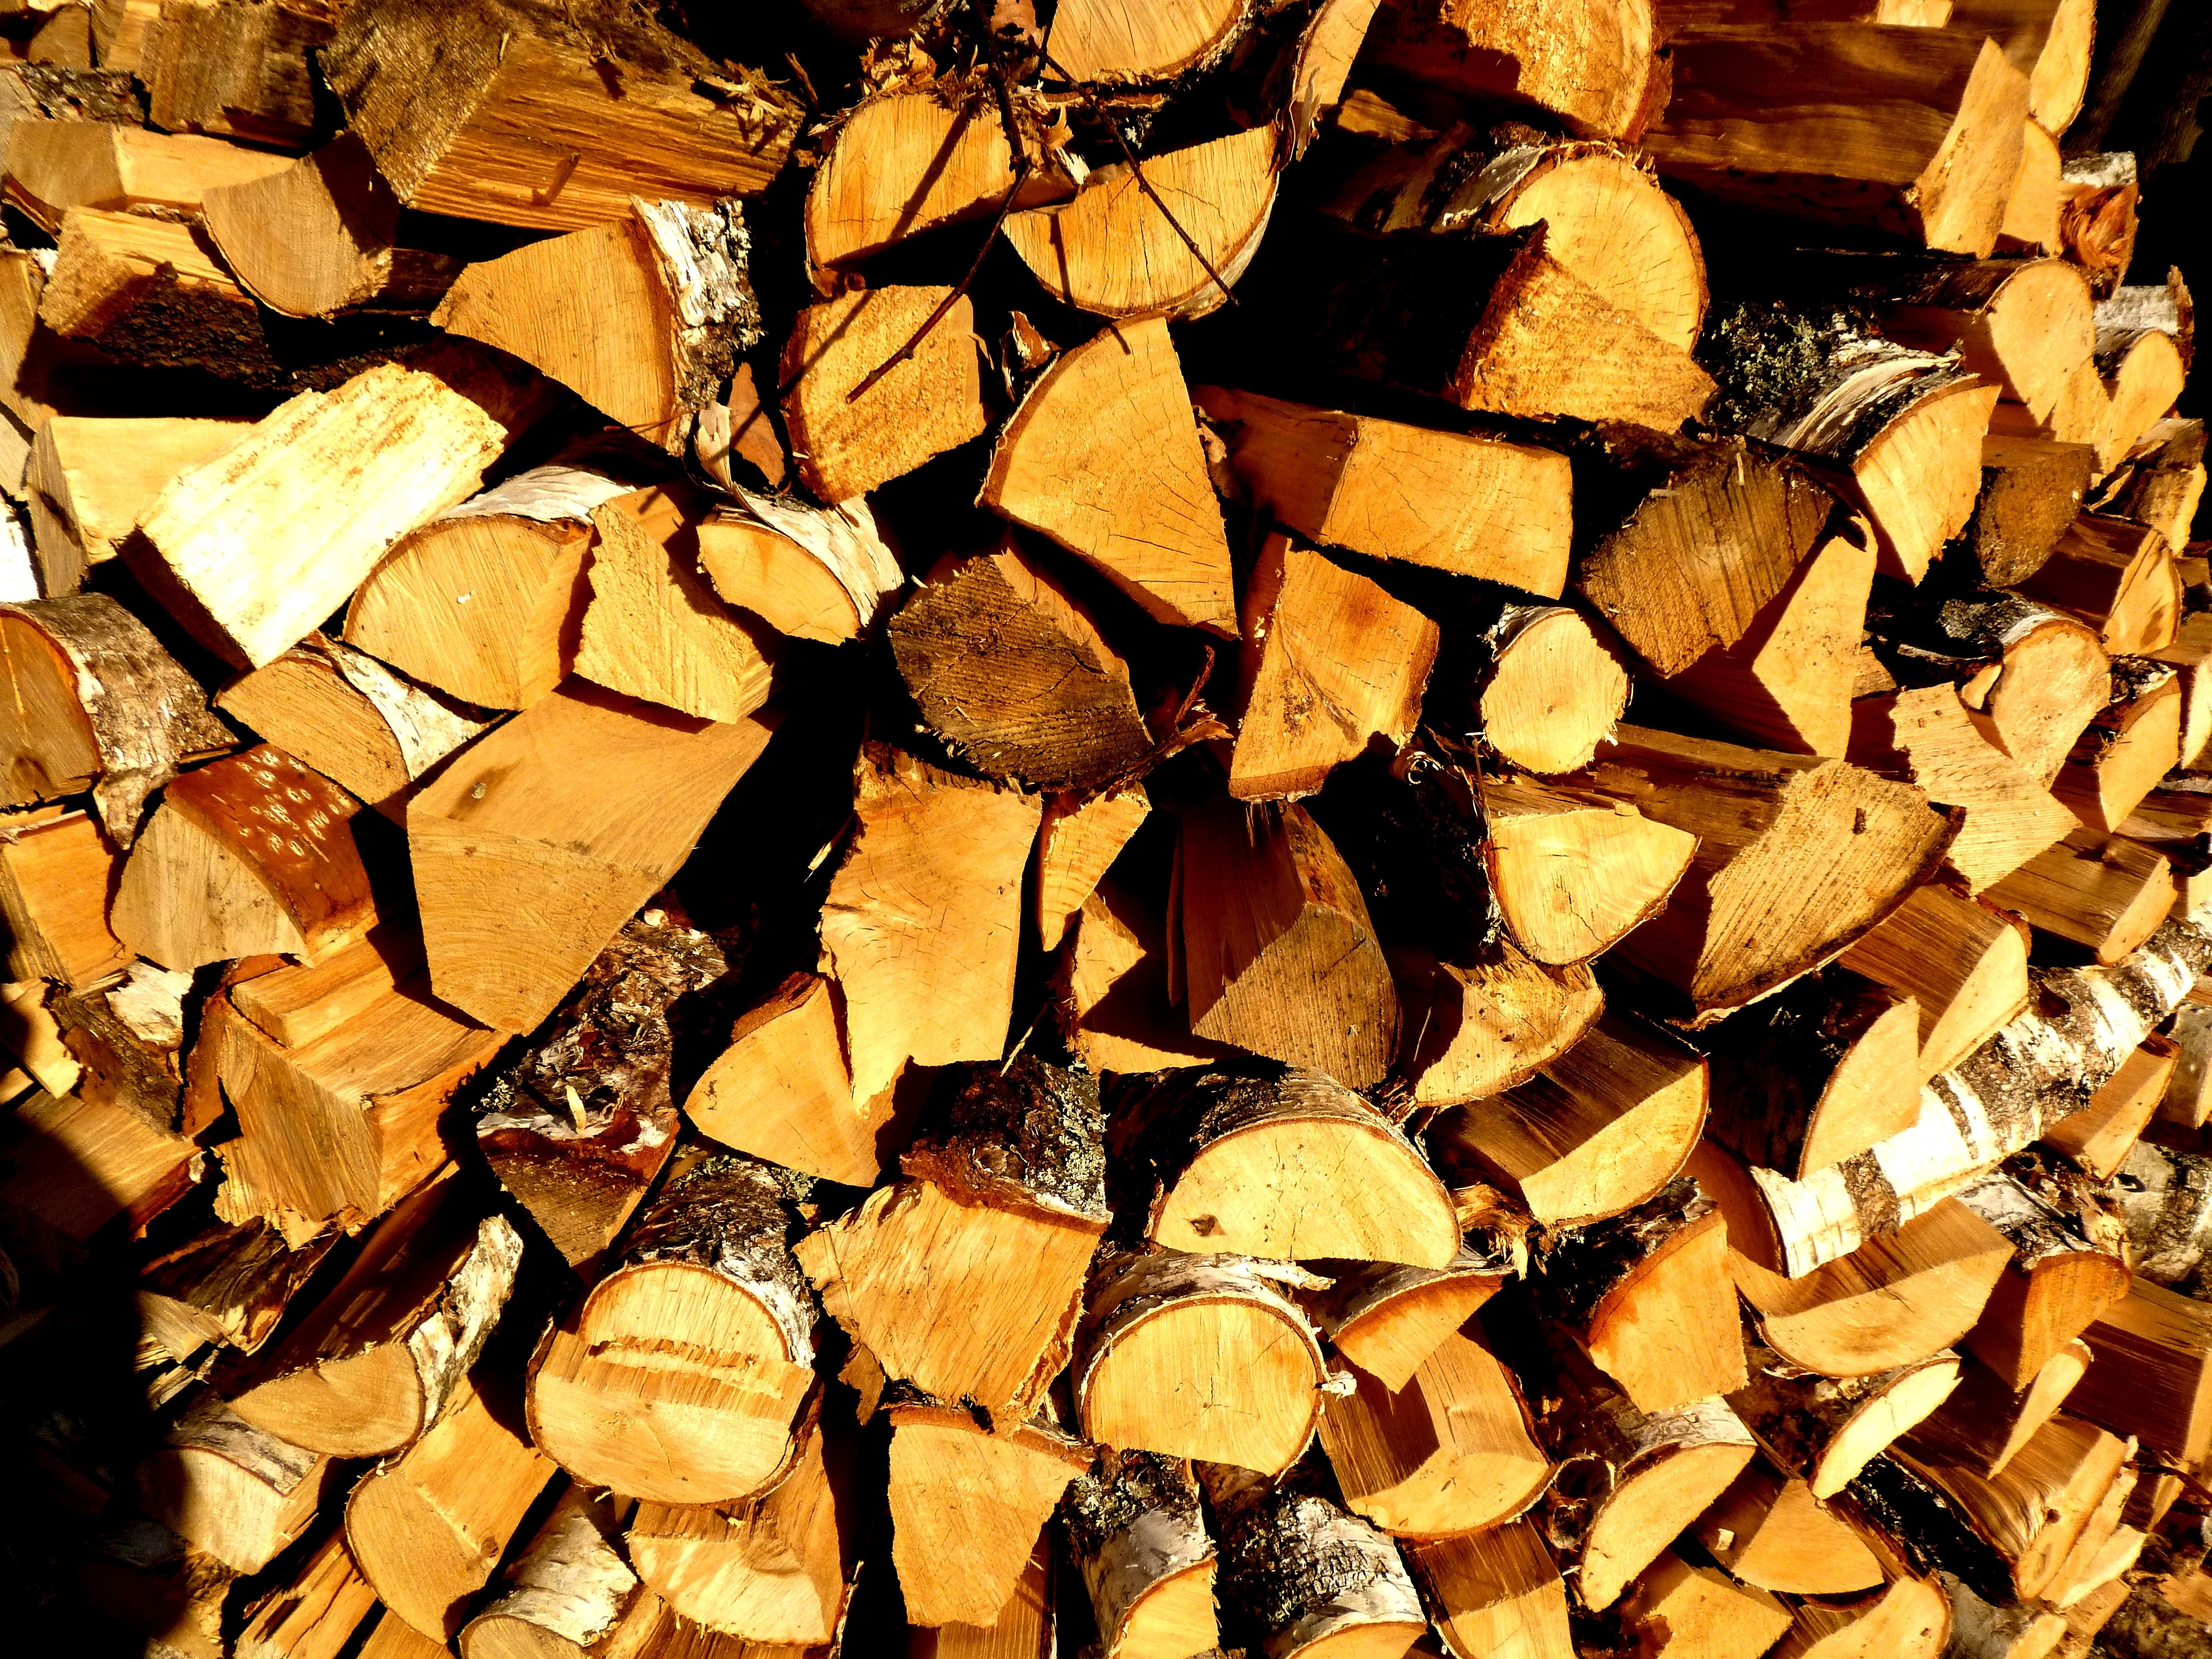 Купить дрова для бани с доставкой. Связка дров. Дрова на стройке. Березовые дрова. Обои дрова поленница.